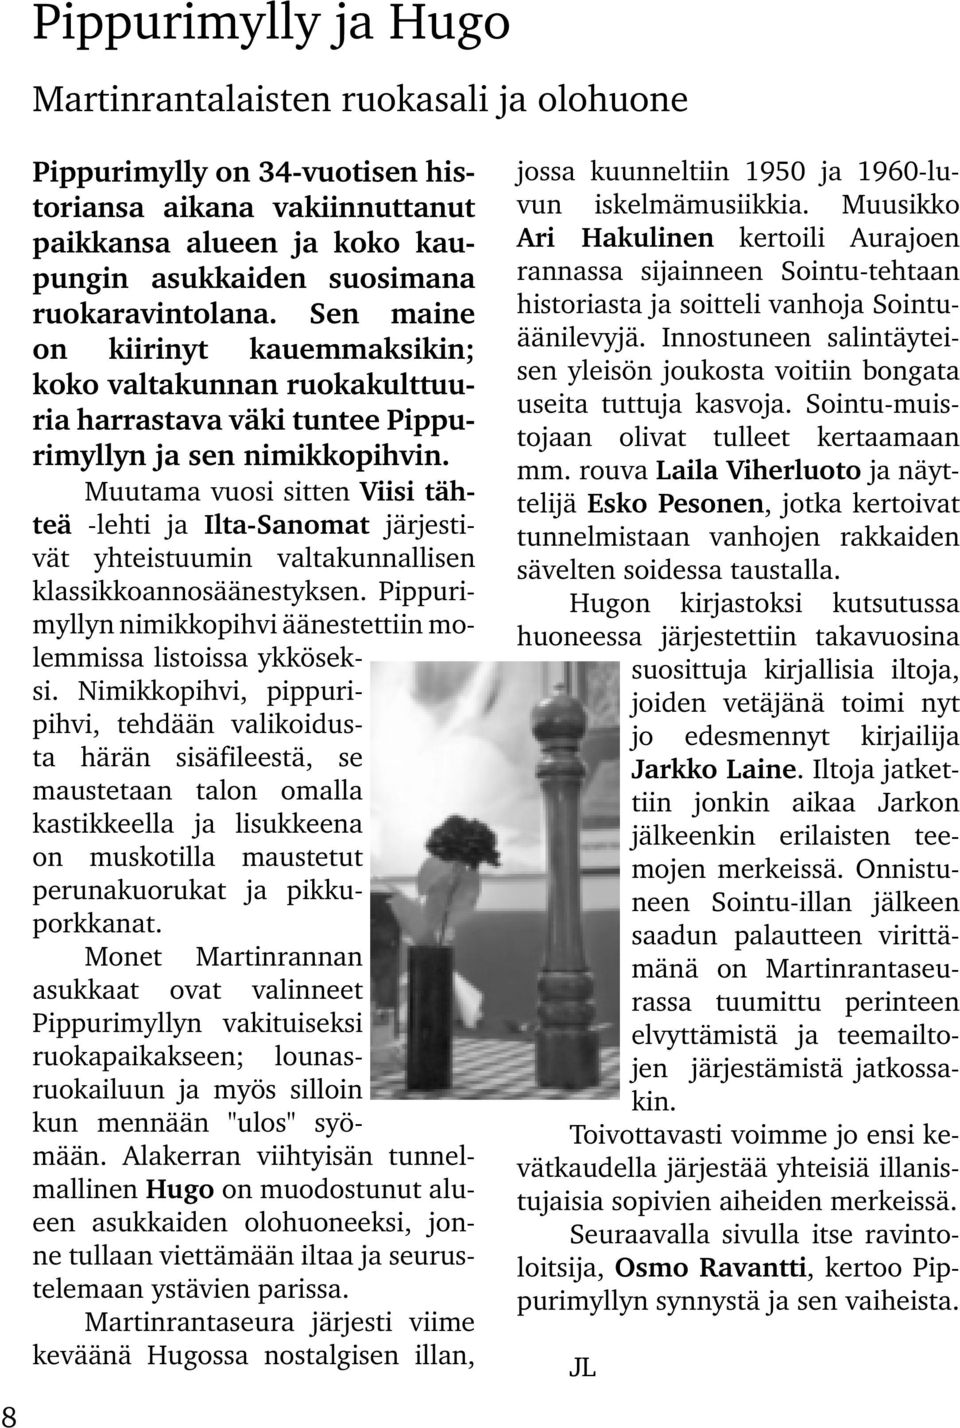 Muutama vuosi sitten Viisi tähteä -lehti ja Ilta-Sanomat järjestivät yhteistuumin valtakunnallisen klassikkoannosäänestyksen. Pippurimyllyn nimikkopihvi äänestettiin molemmissa listoissa ykköseksi.